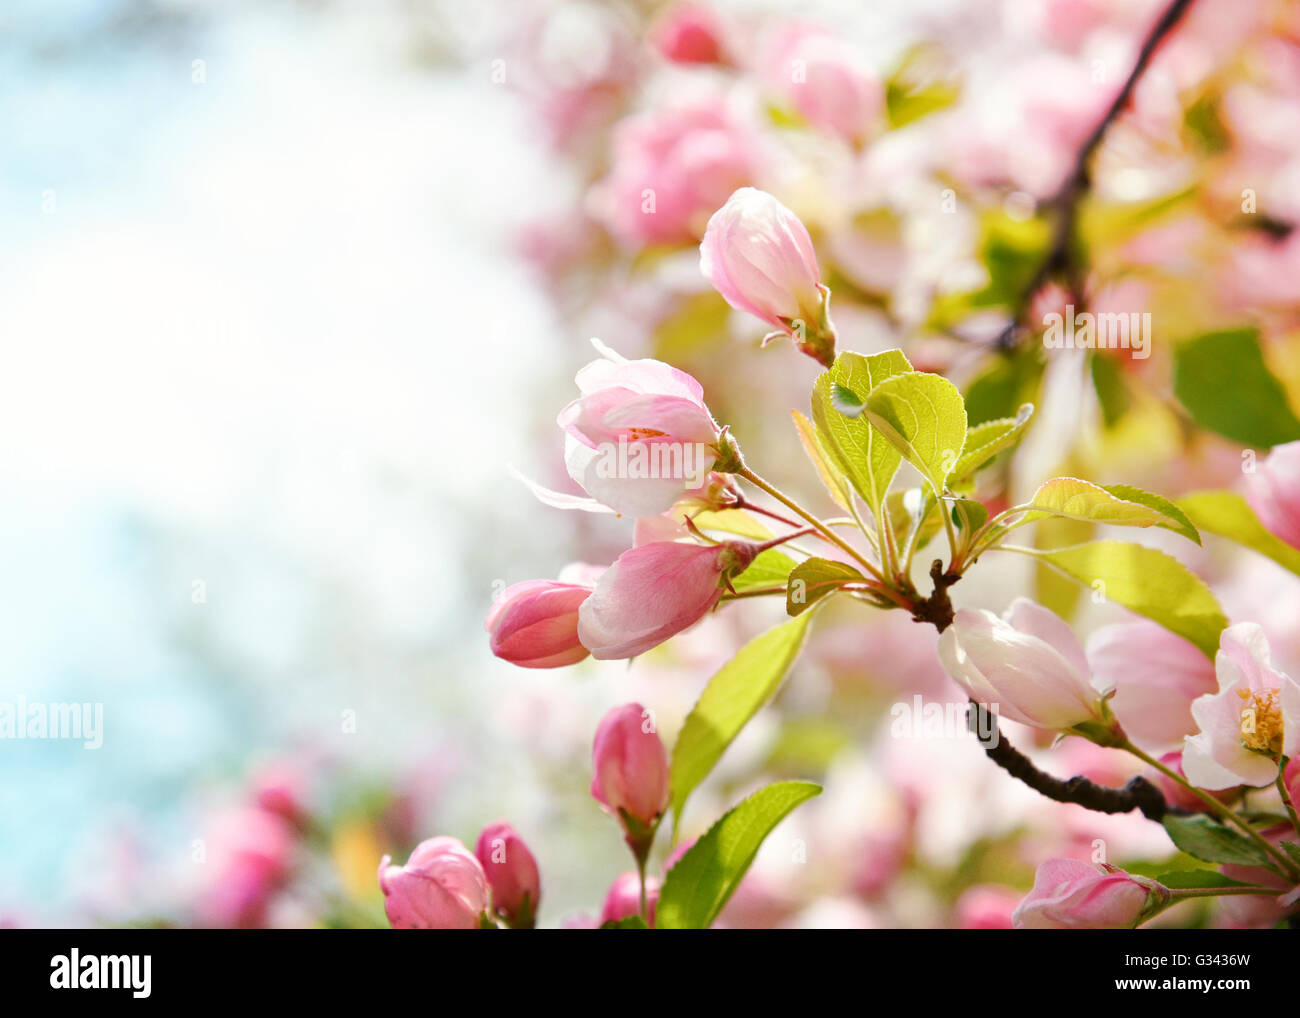 Un gros plan de la belle fleur de cerisier rose fleurs dans un arbre avec un blurrred zone d'arrière-plan. Banque D'Images